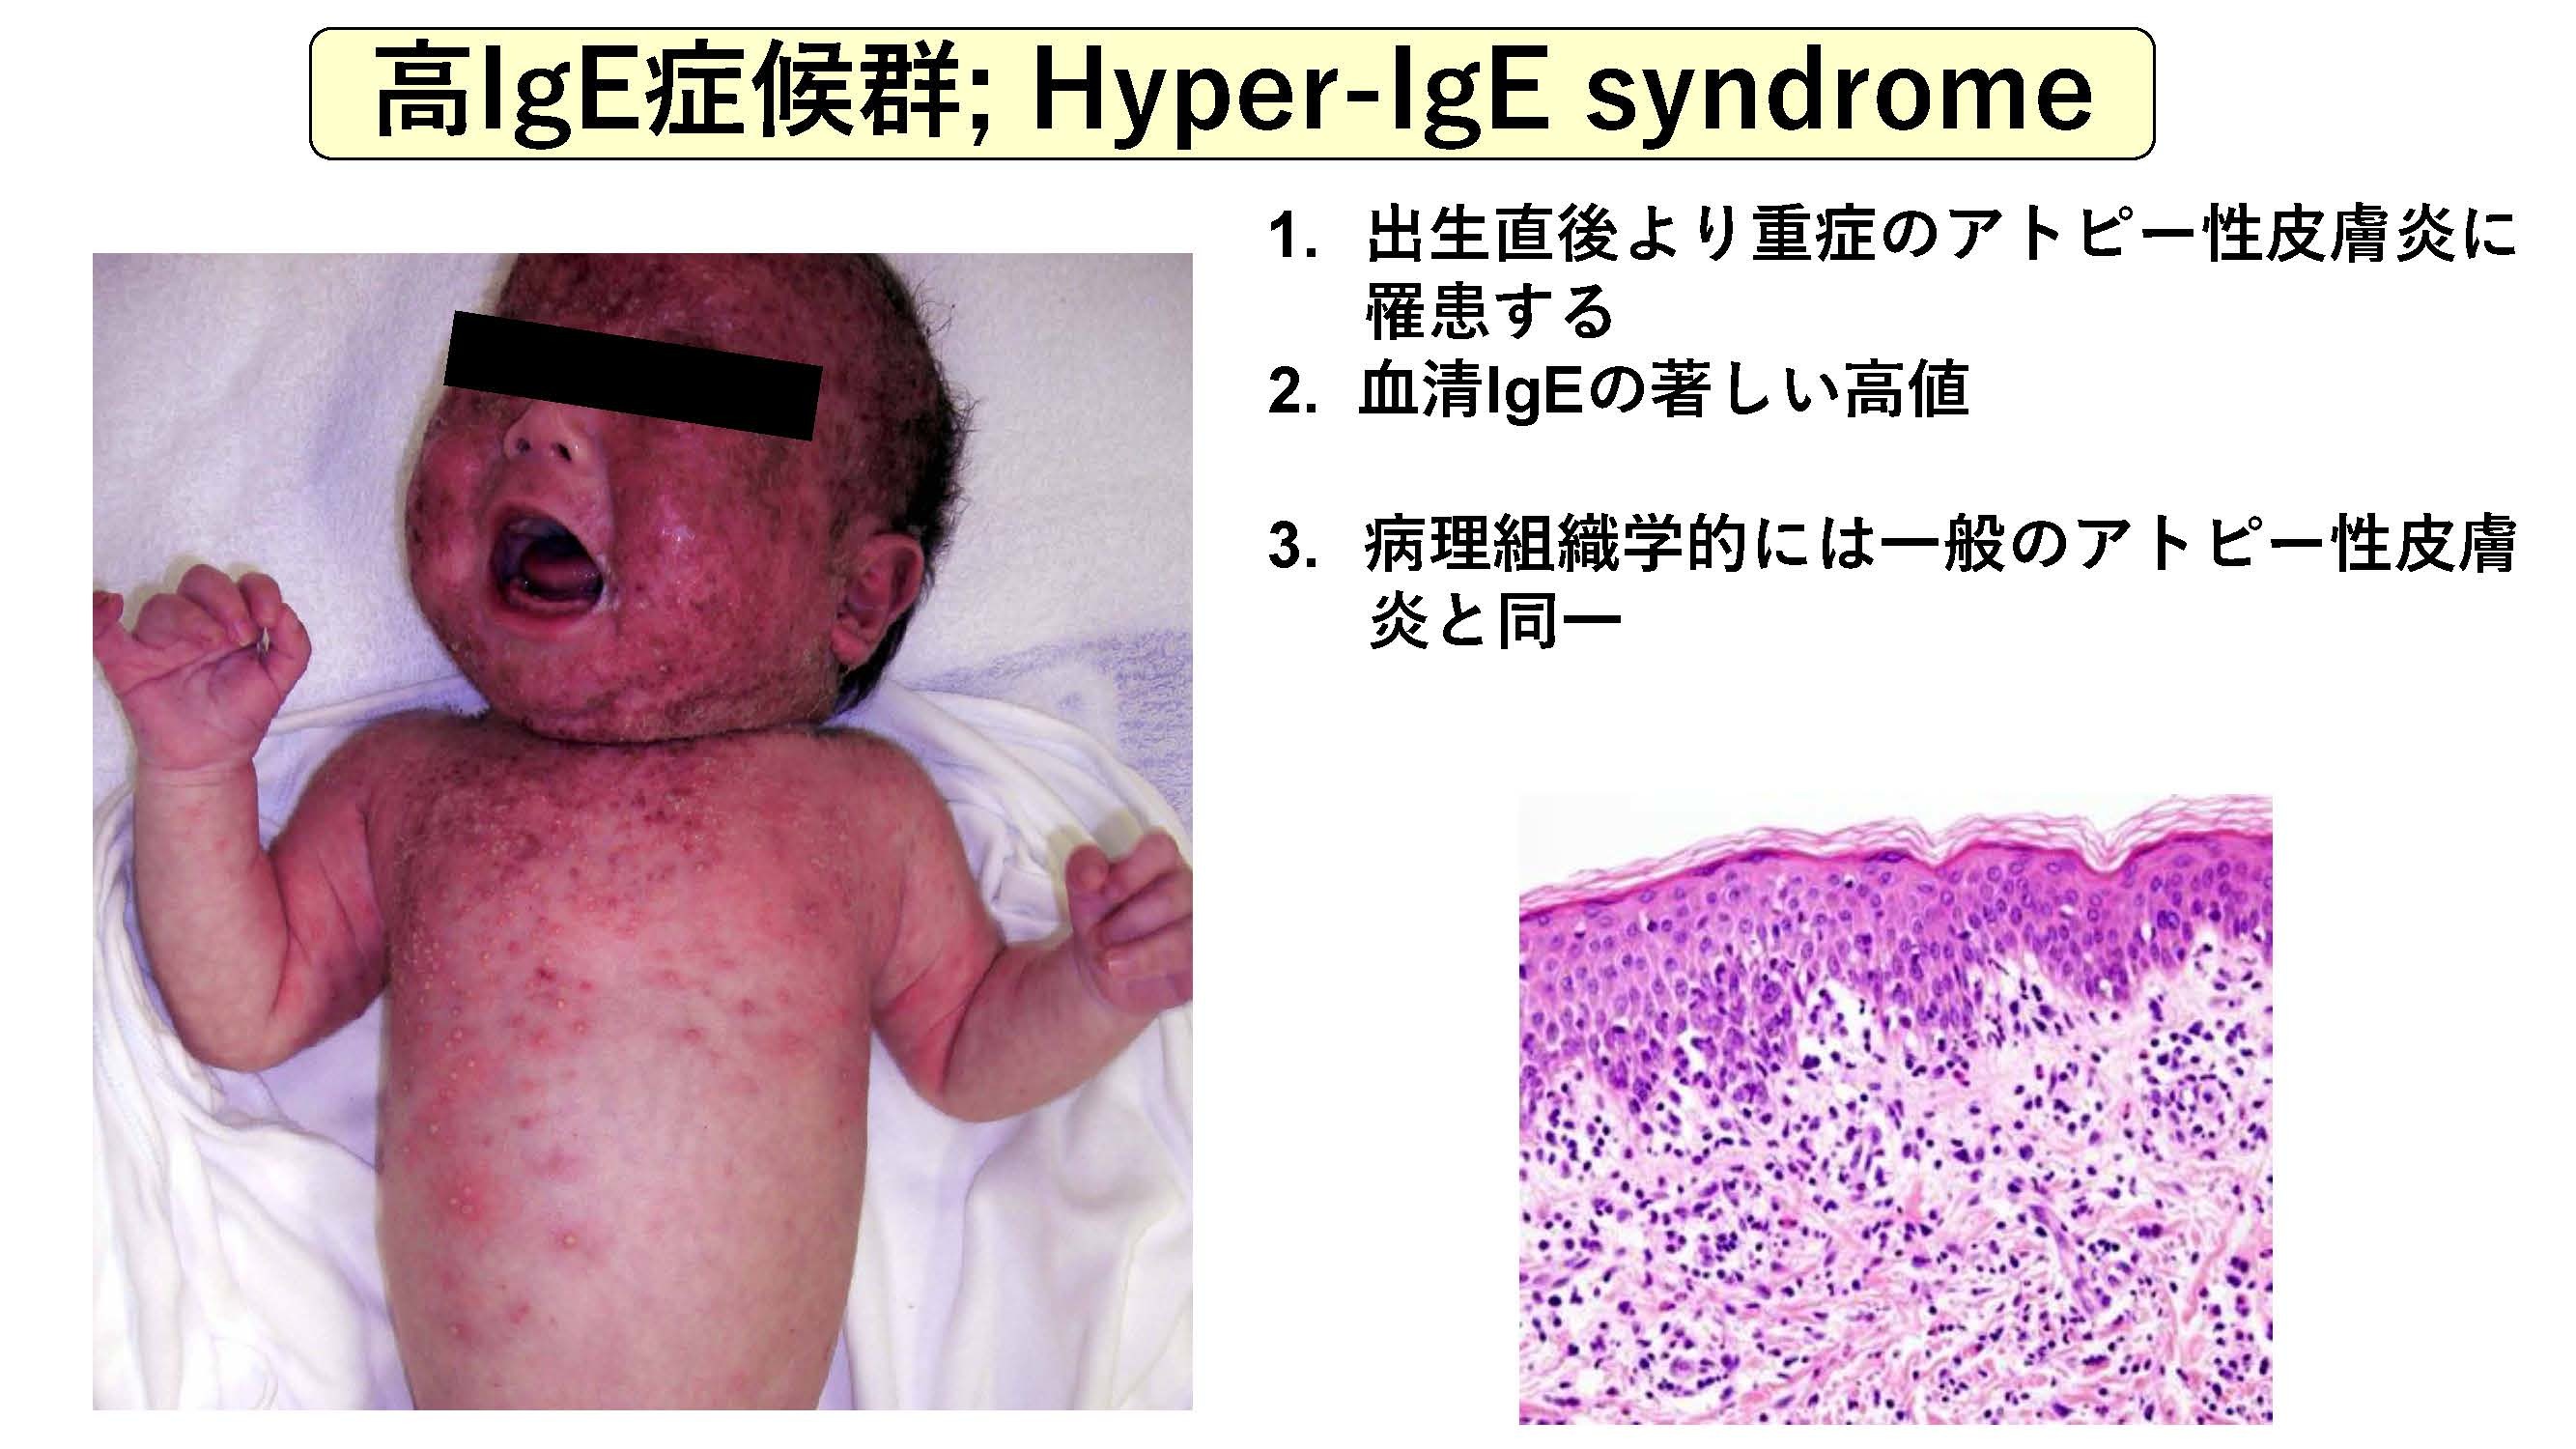 高IgE症候群；Hyper-IgE syndrome